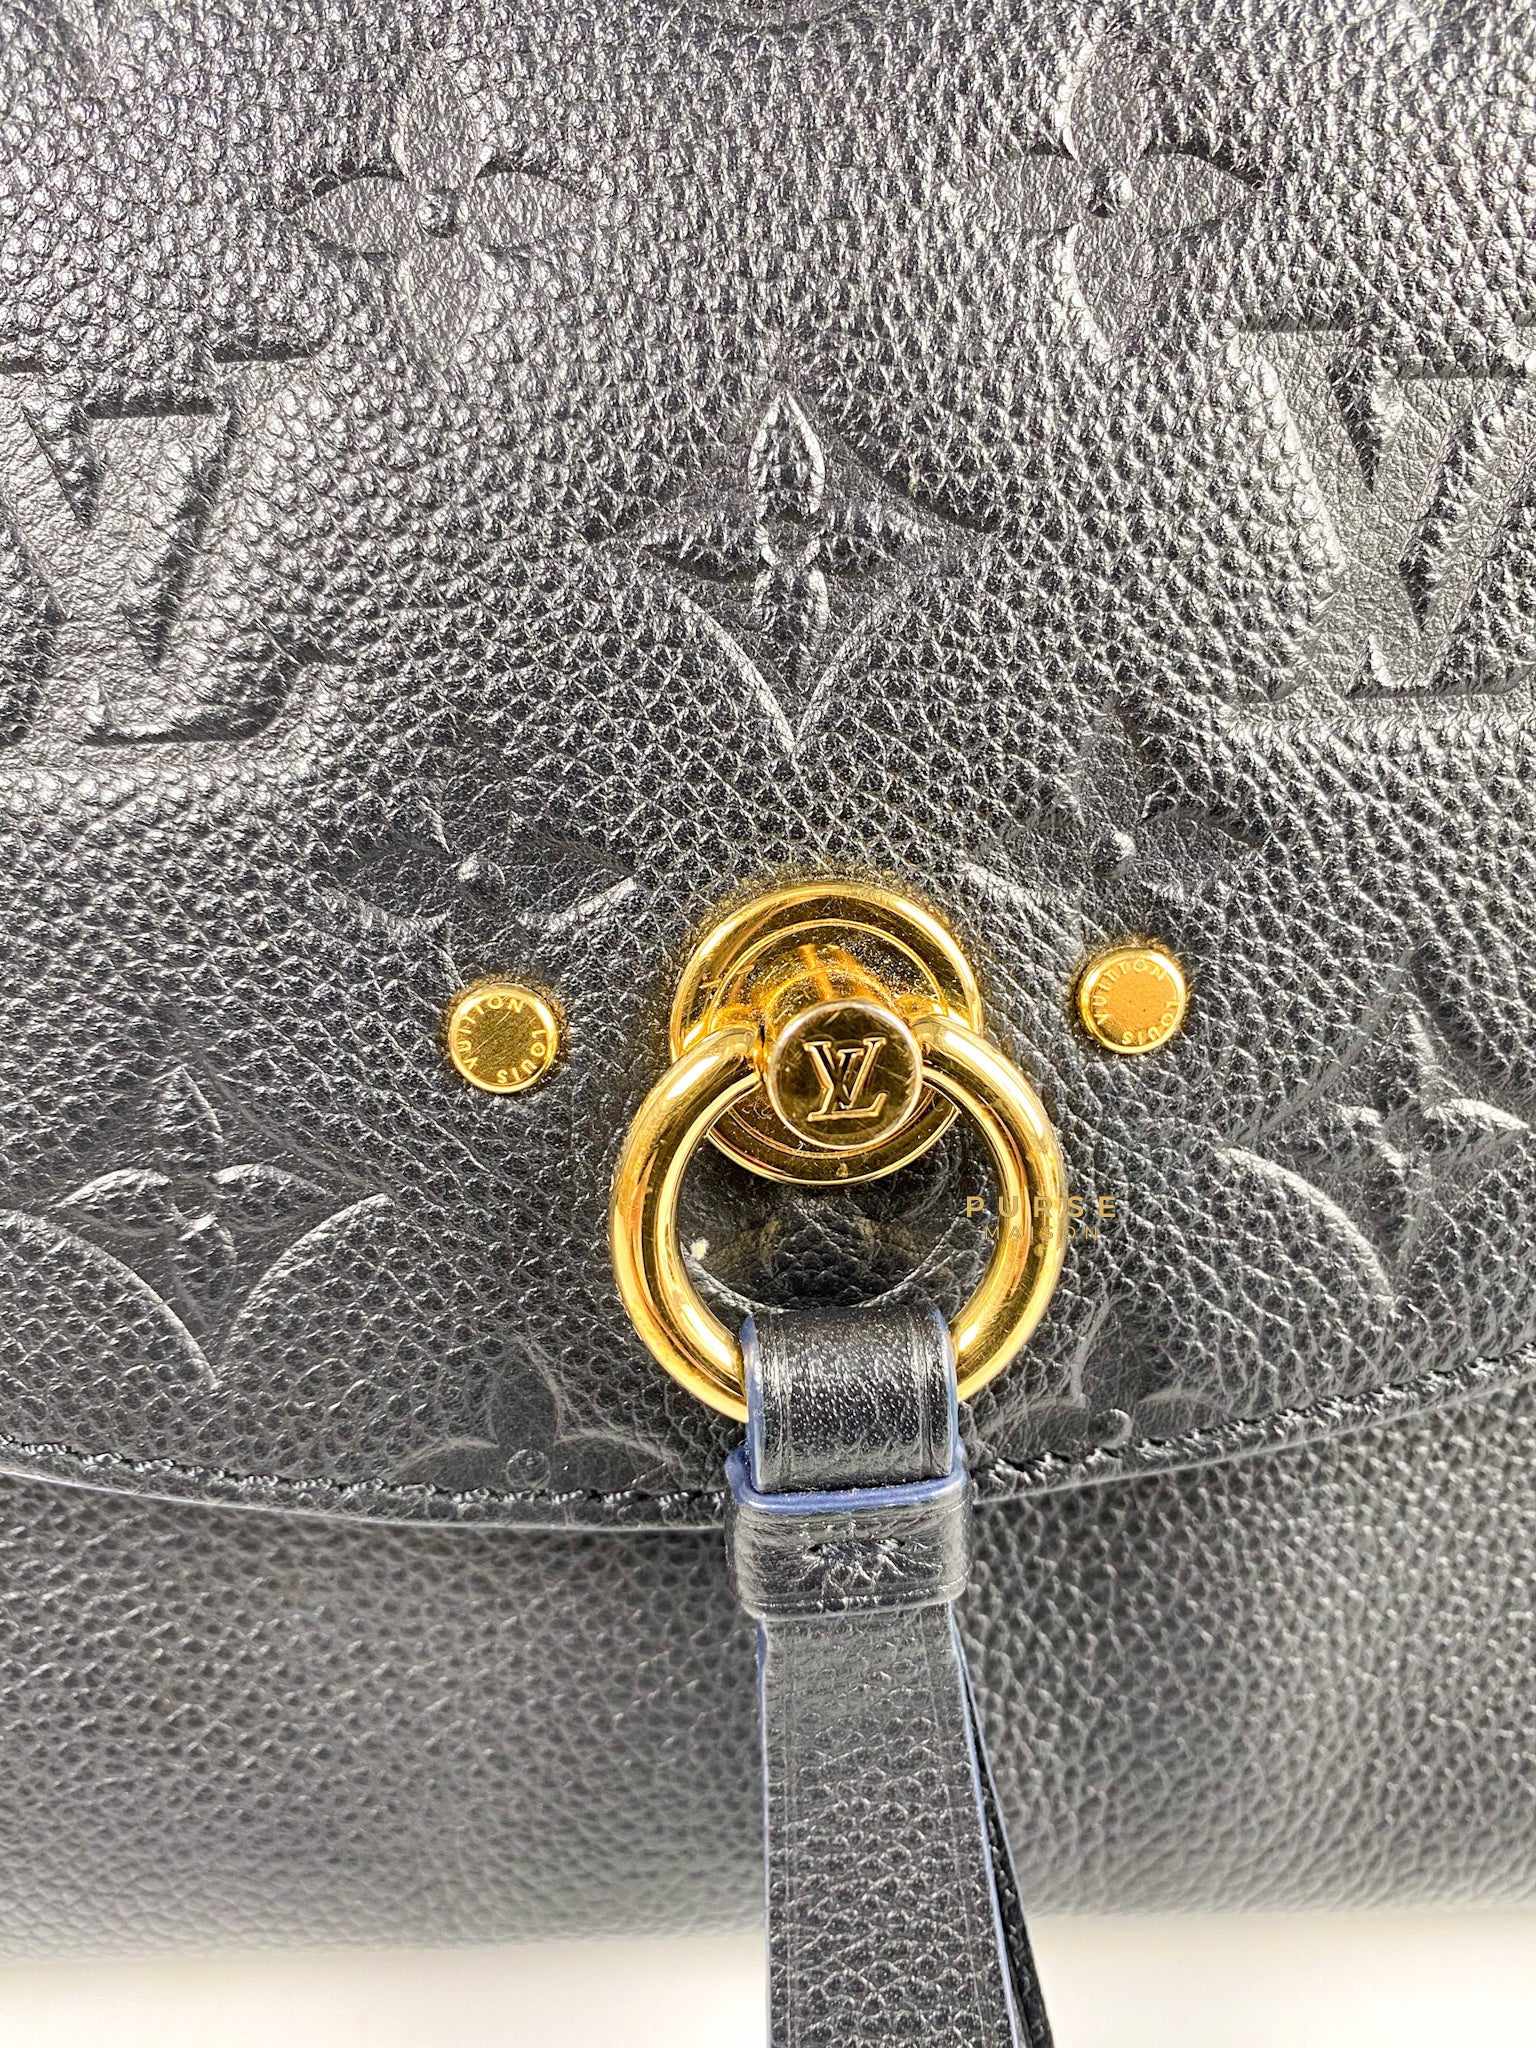 Louis Vuitton Blanche MM Noir in Monogram Empreinte Leather (Date